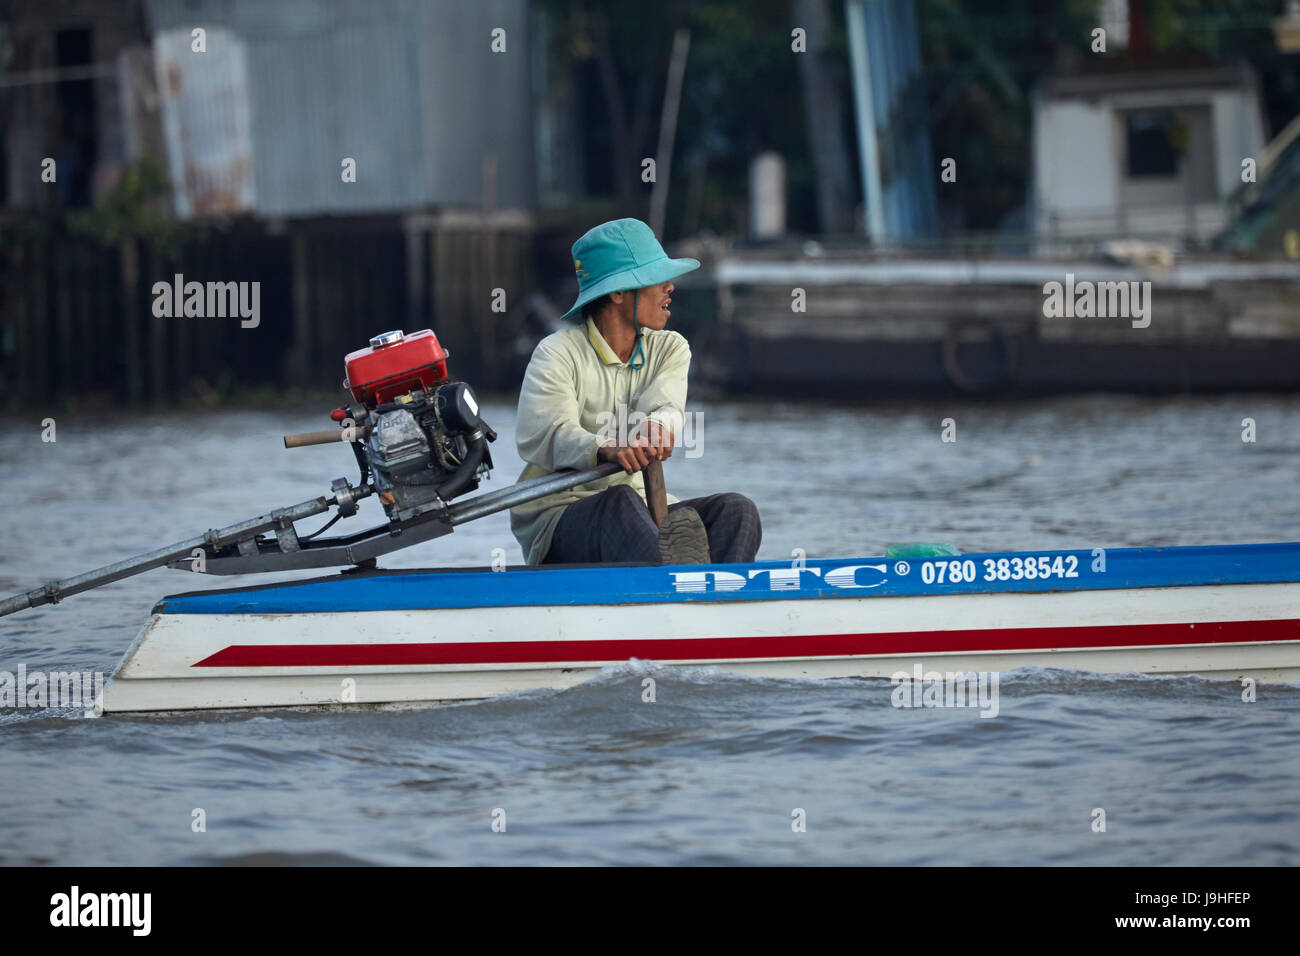 L'homme en bateau à longue queue, du marché flottant de Cai Rang, Can Tho, Delta du Mékong, Vietnam Banque D'Images